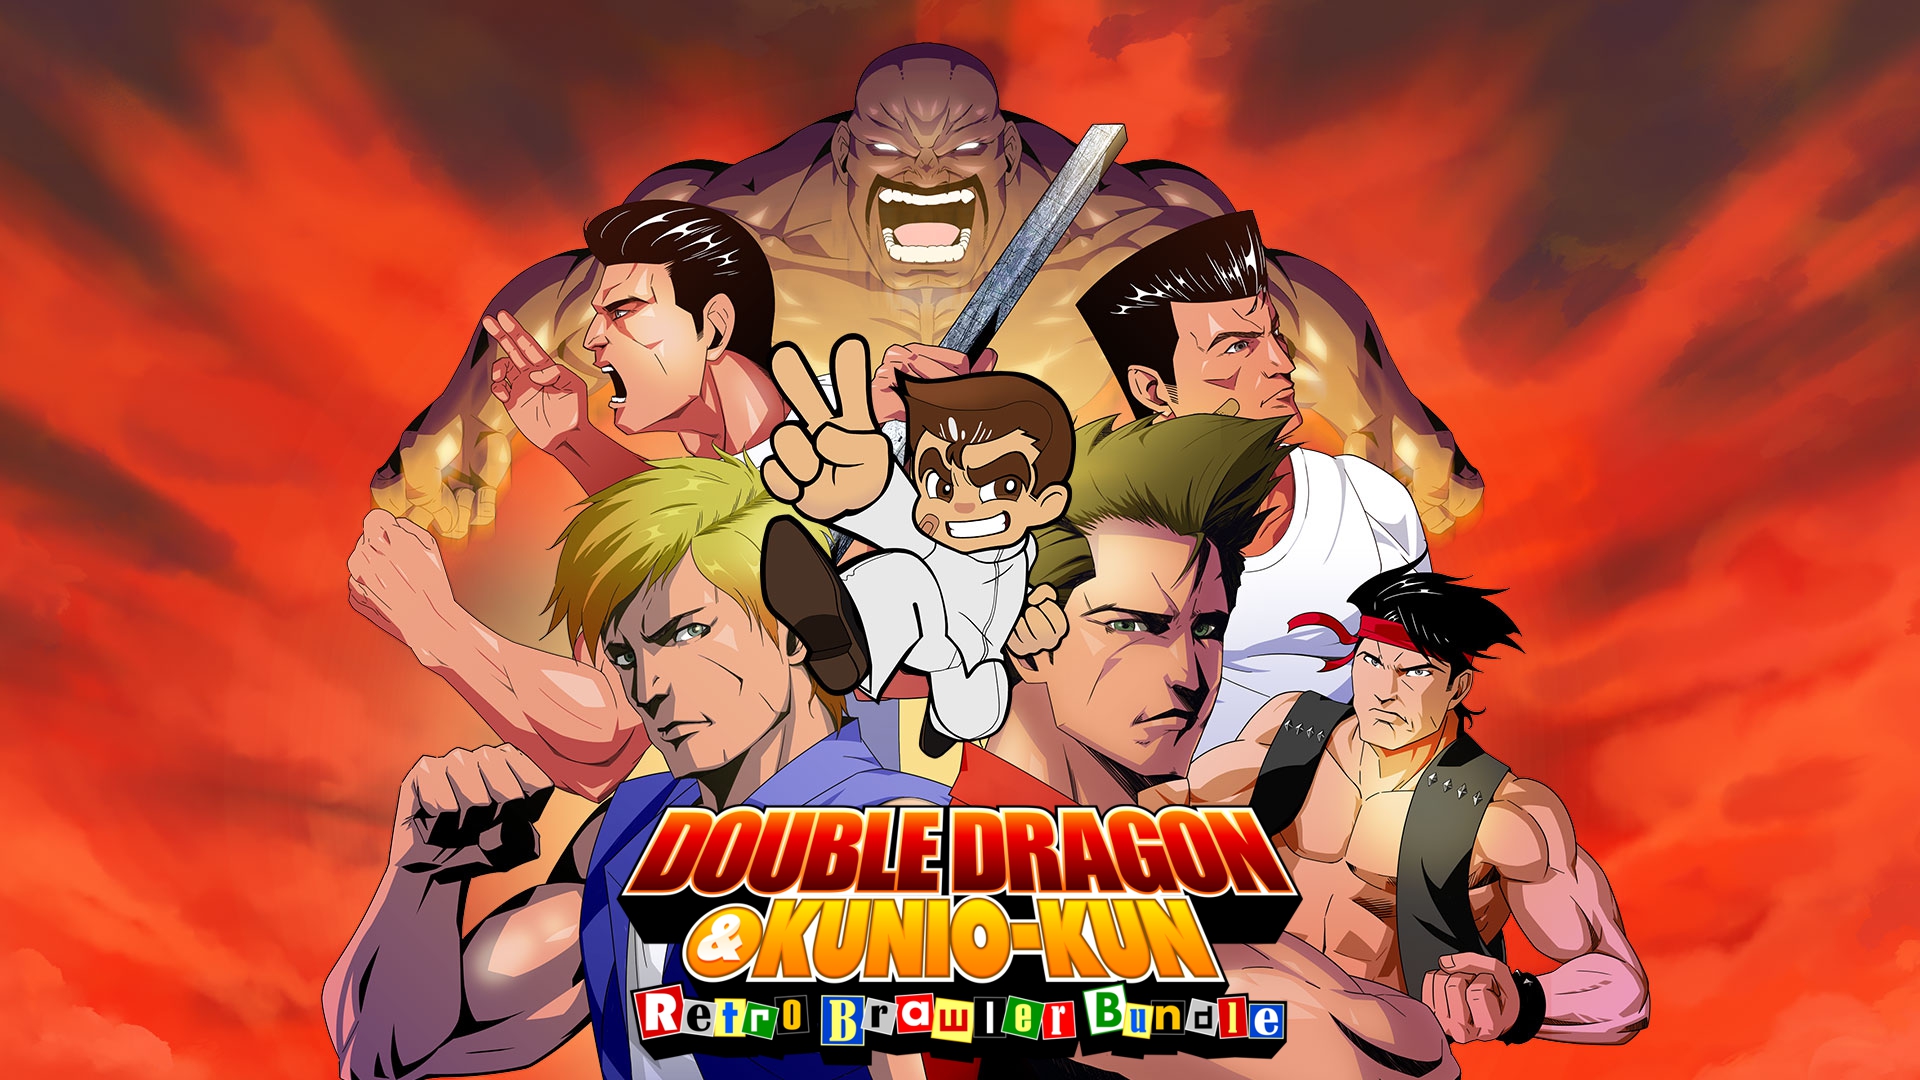 Double Dragon & Kunio-kun Retro Brawler Bundle Principal